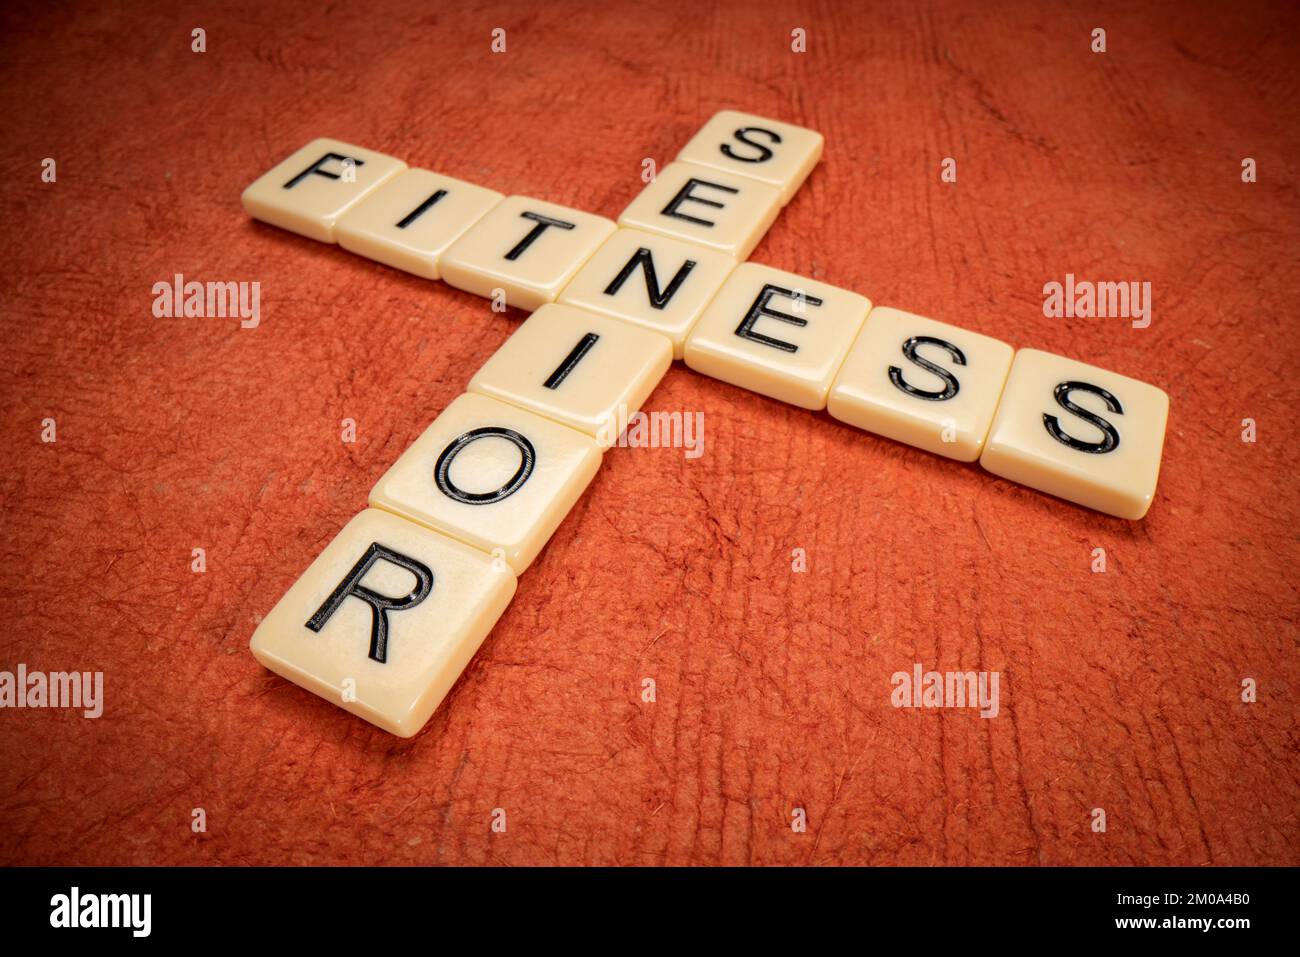 Senior Fitness Kreuzworträtsel mit elfenbeinfarbenen Buchstabensteinen auf texturiertem orangefarbenem Papier, Gesundheits- und Lifestyle-Konzept Stockfoto